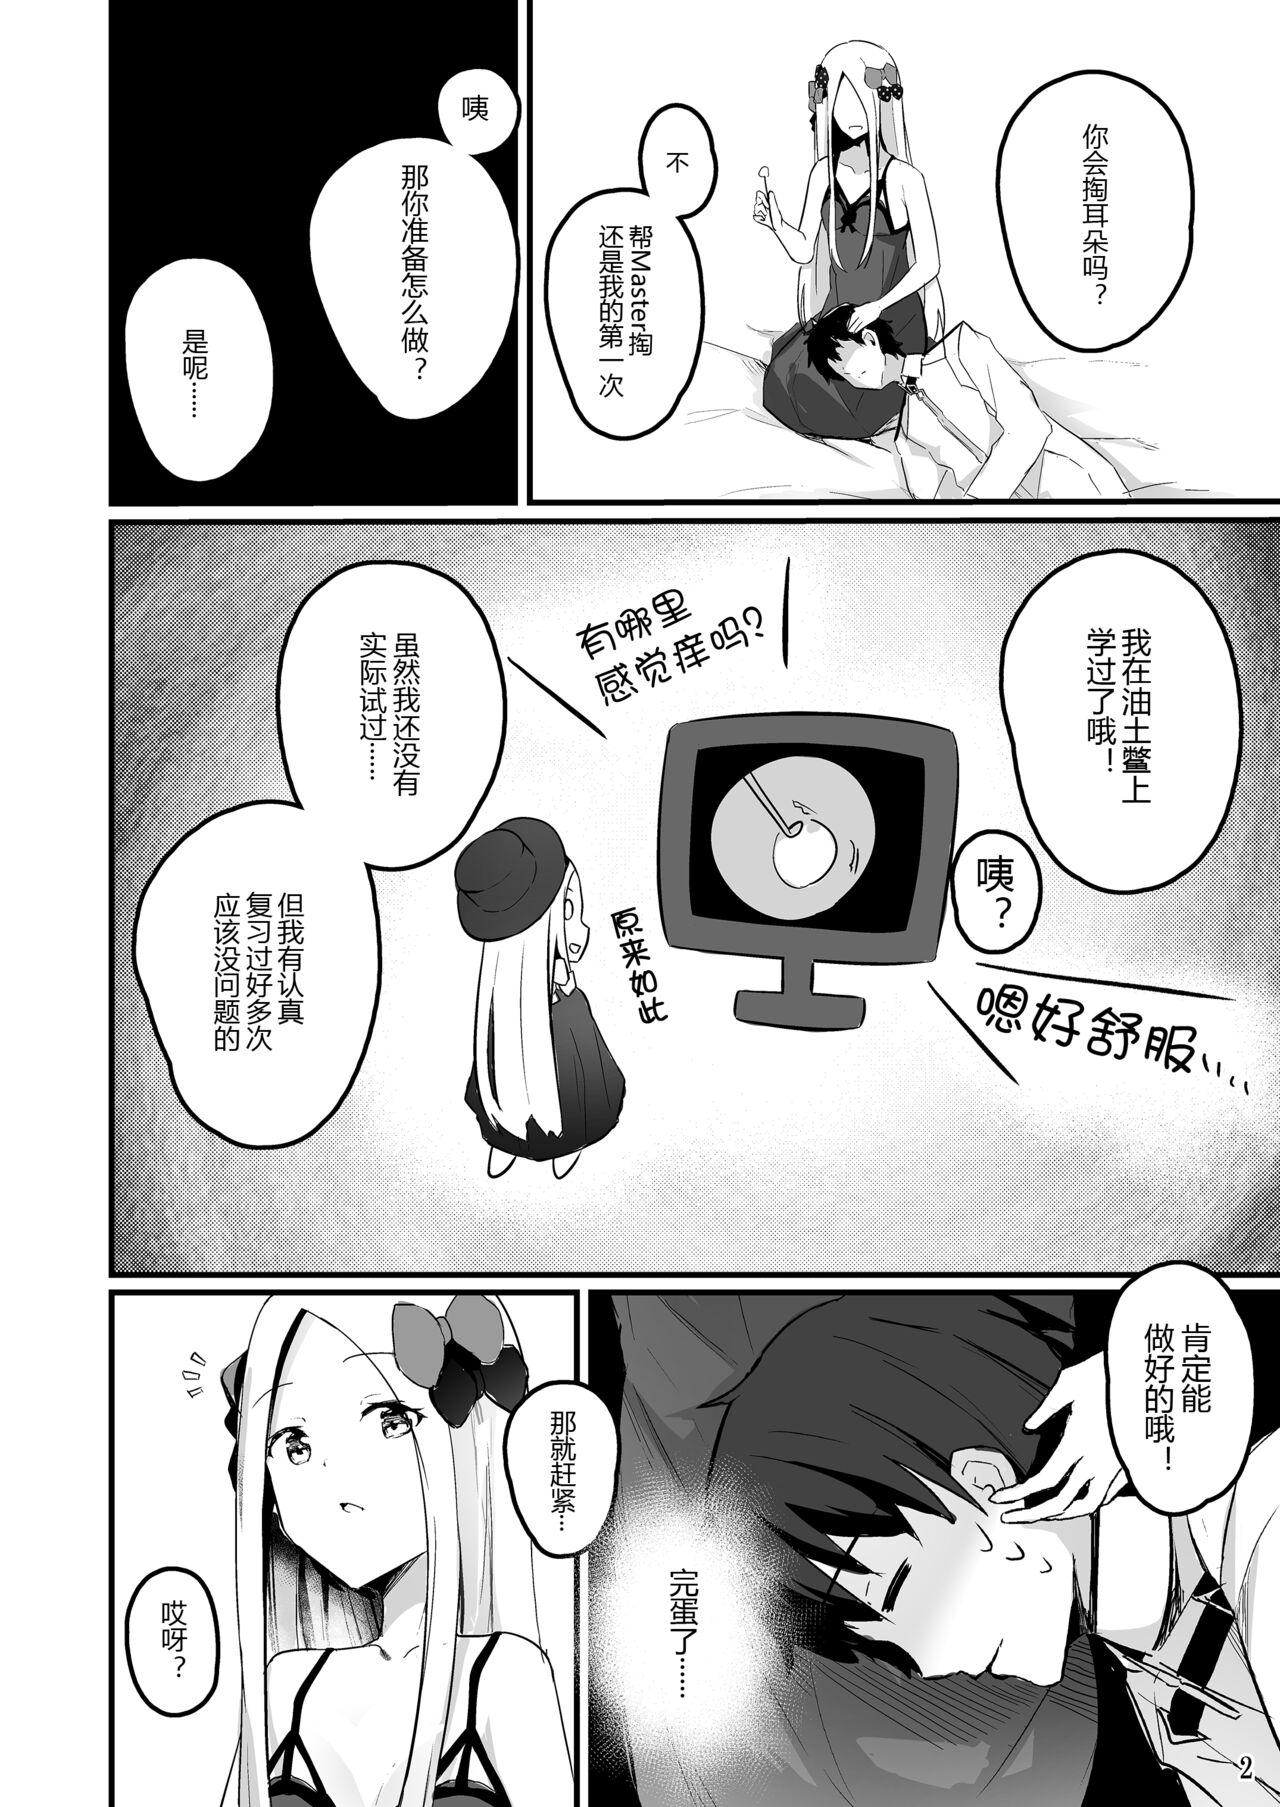 Nut Koyoi wa Tsuki o Nagamete Mimikaki demo Shite Watashi no Hiza de Nemasen ka - Fate grand order Friends - Page 6